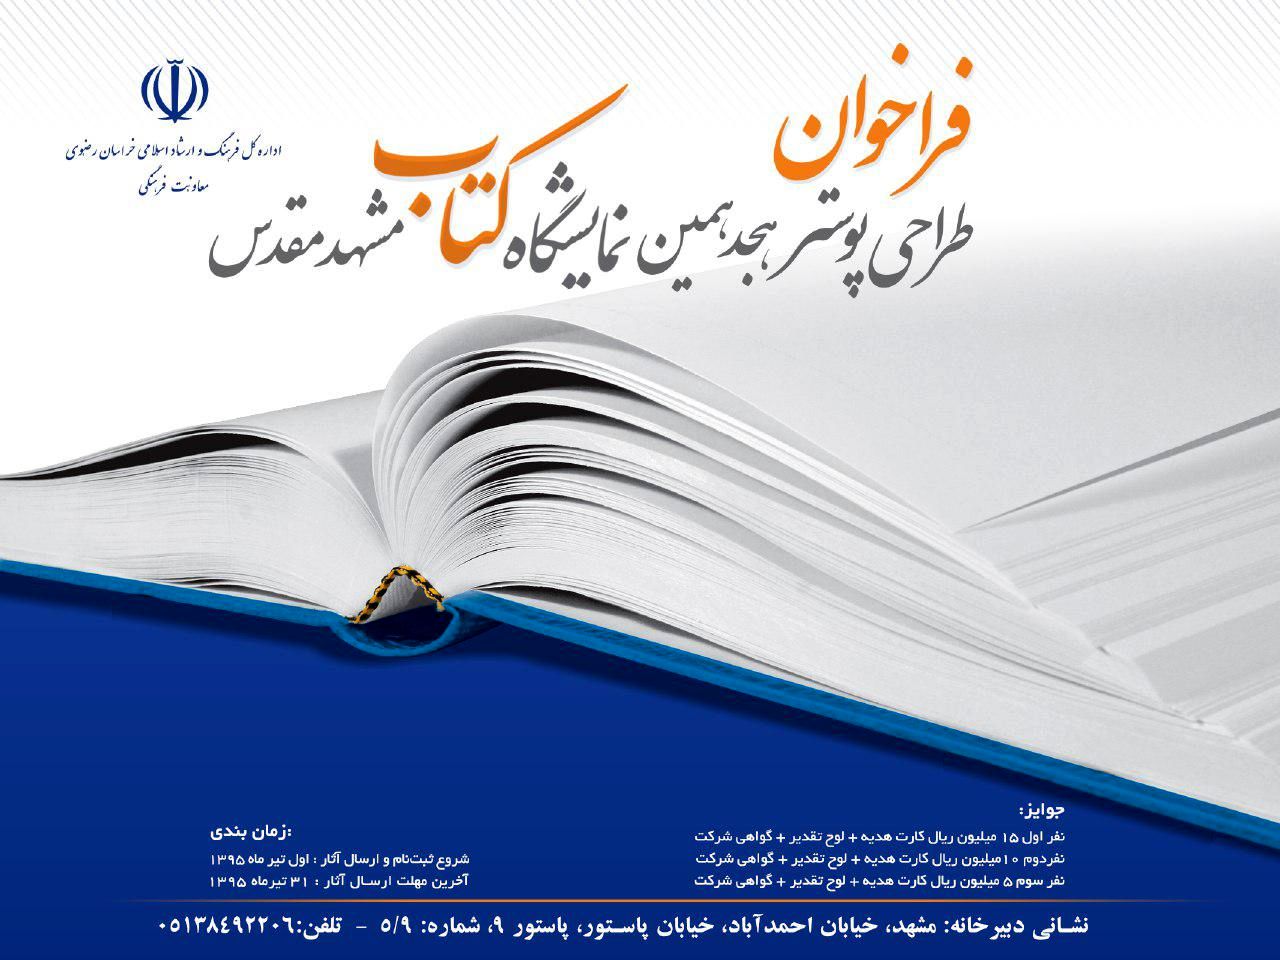 فراخوان مسابقه طراحی پوستر هجدهمین نمایشگاه کتاب مشهد منتشر شد